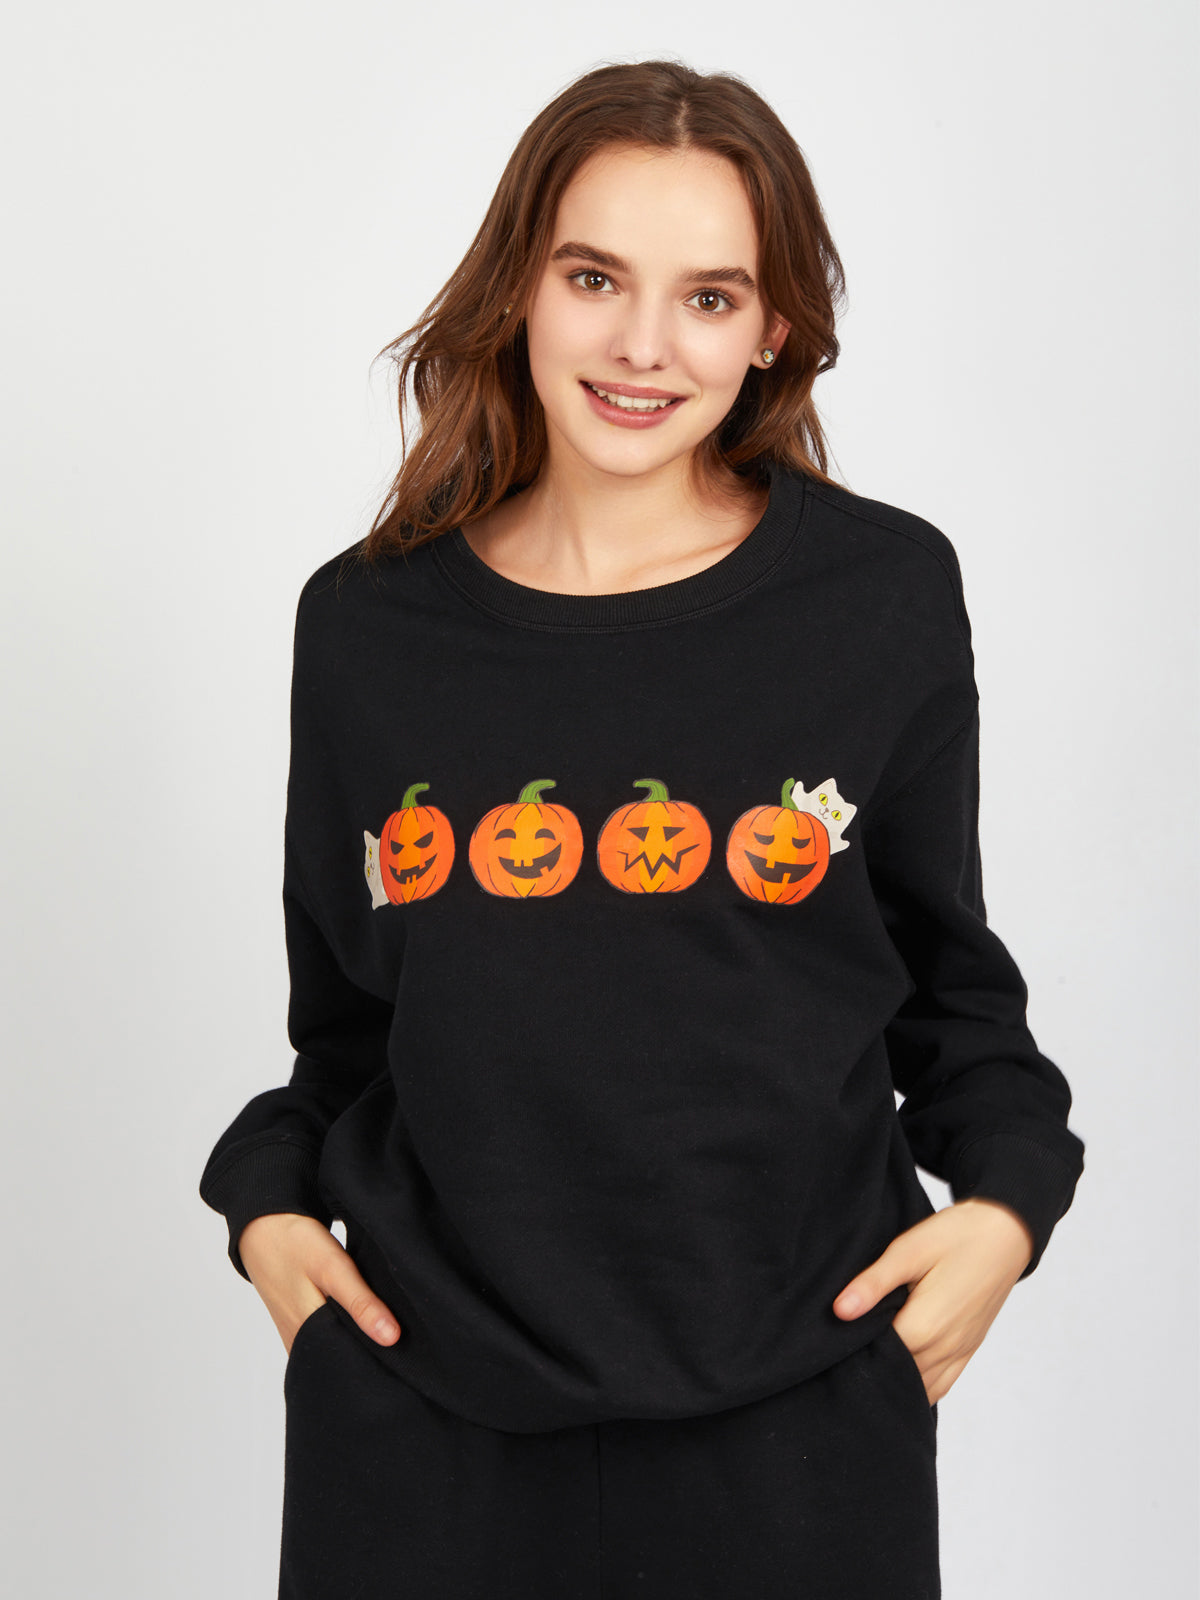 Spooky Pumpkins Graphic Sweatshirt